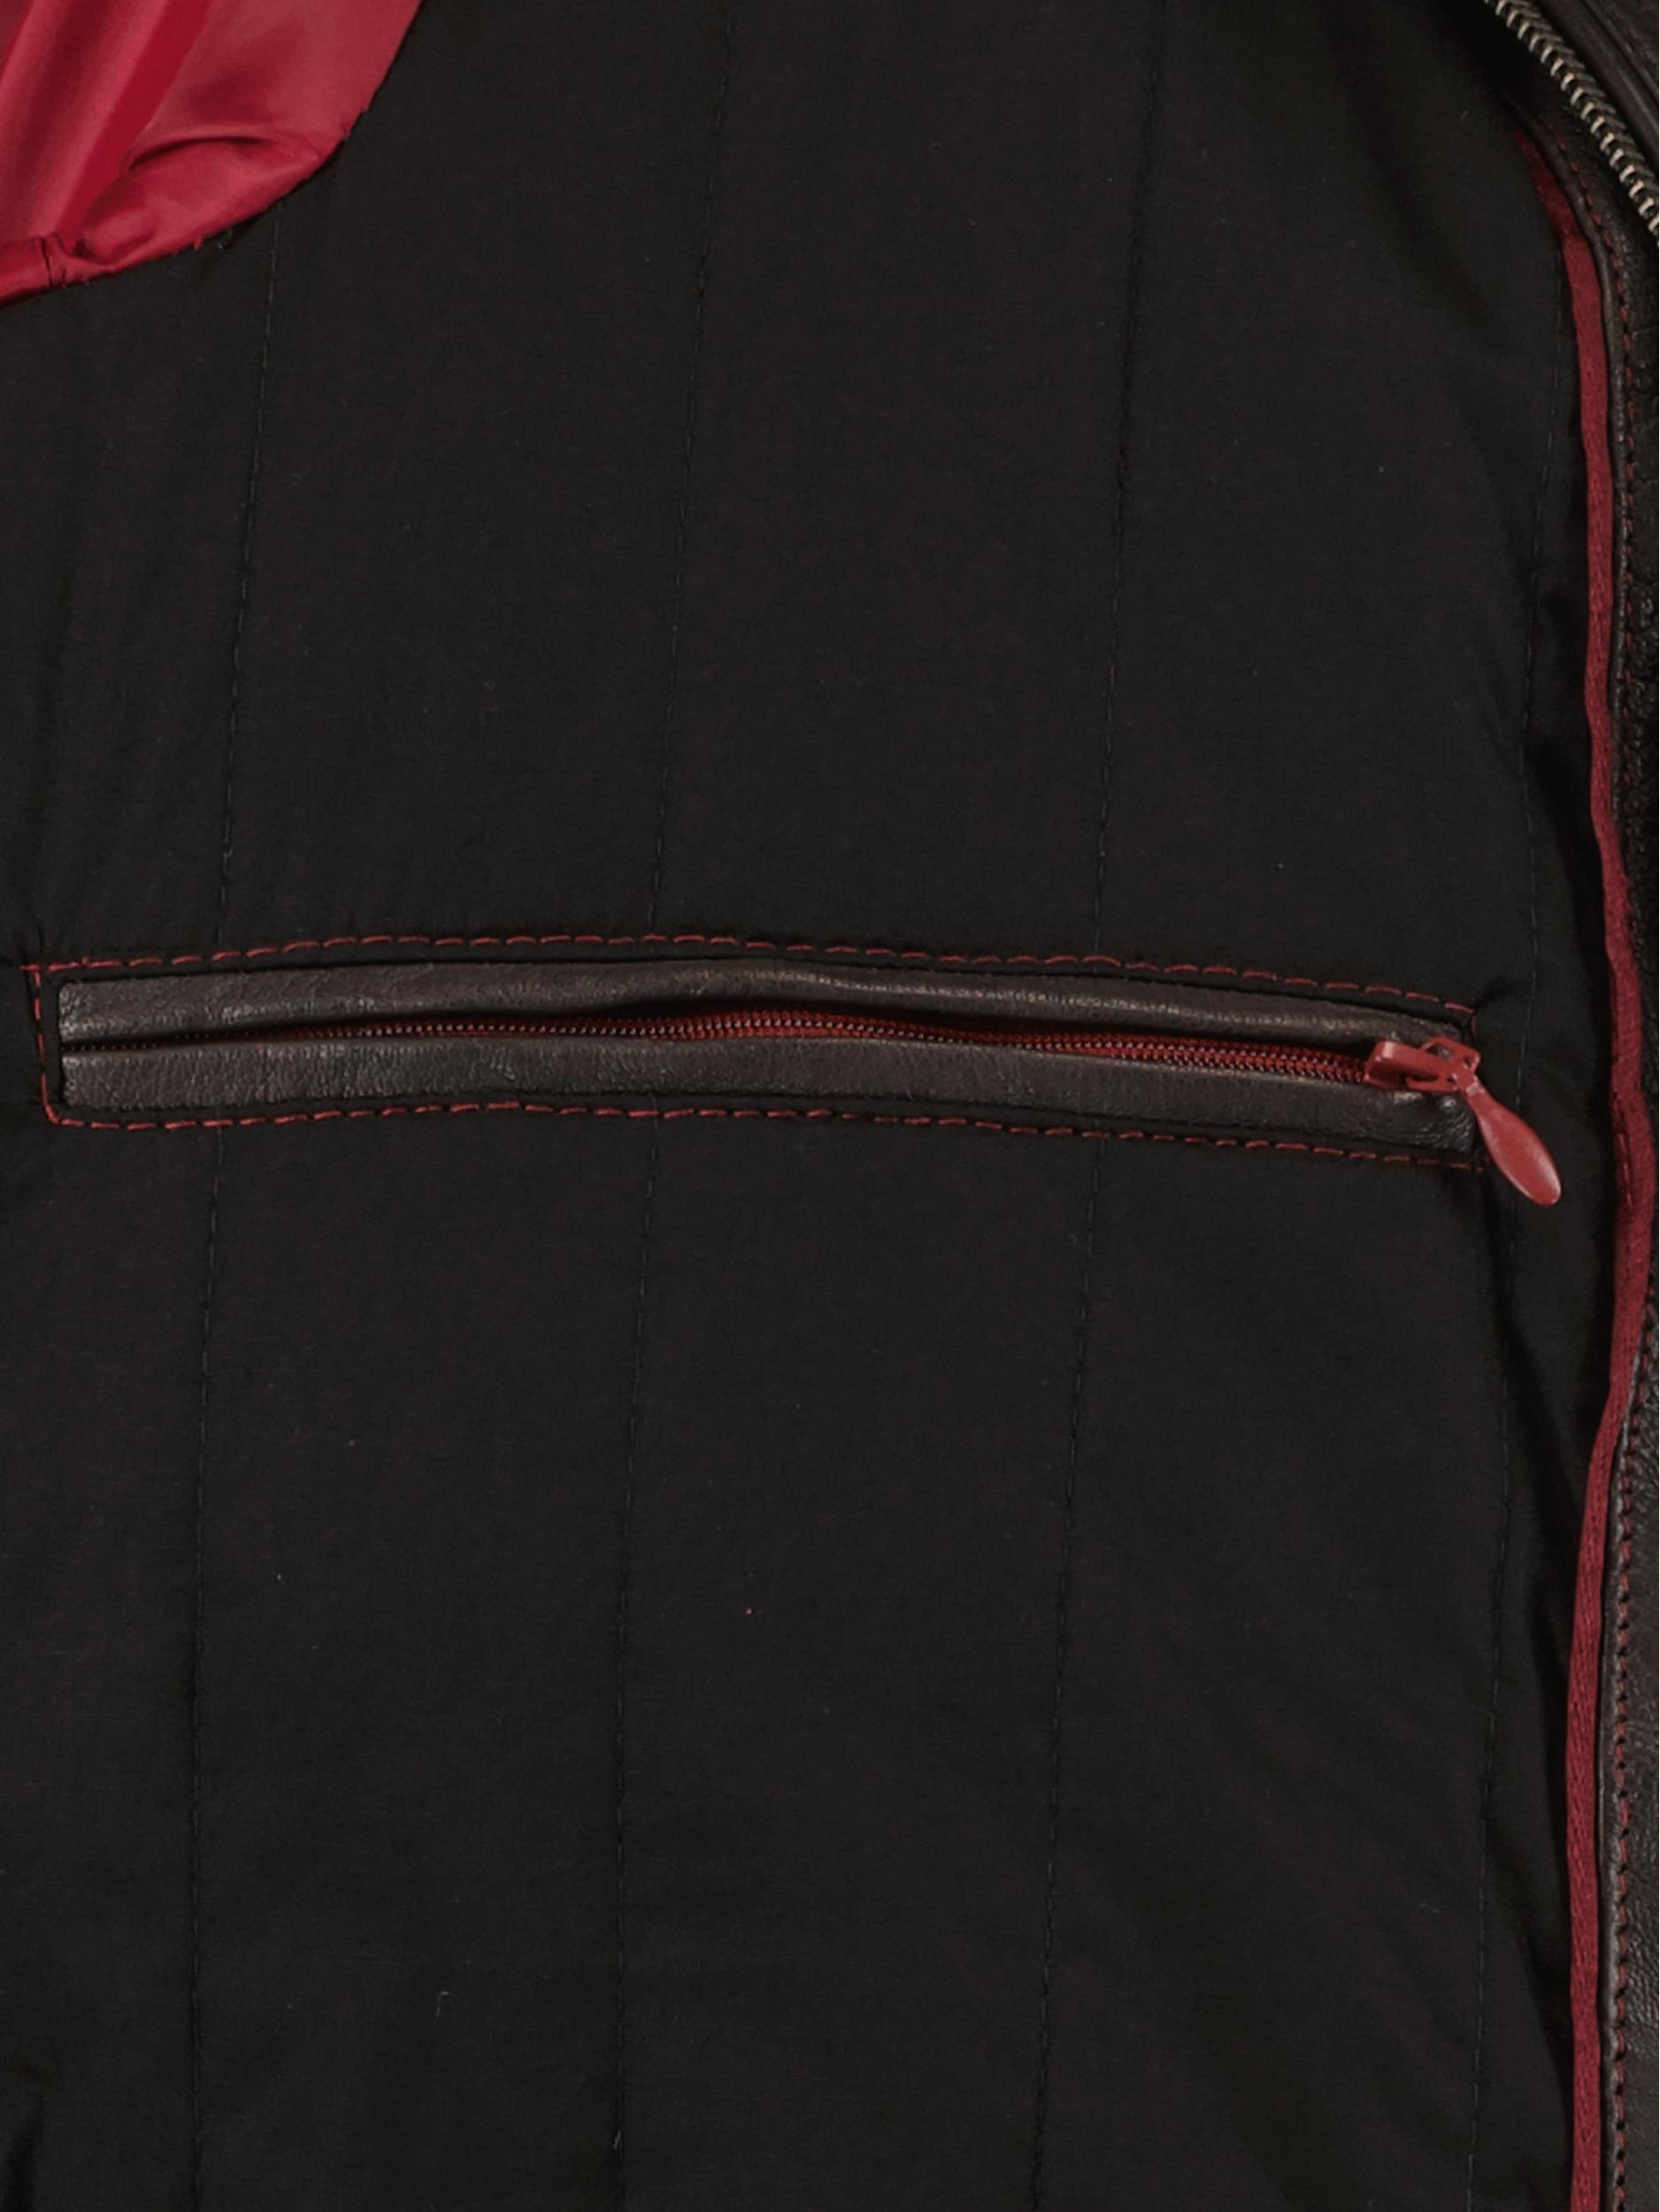 Donders 1860 Lederen Jack Bruin Leather Jacket 52318/599